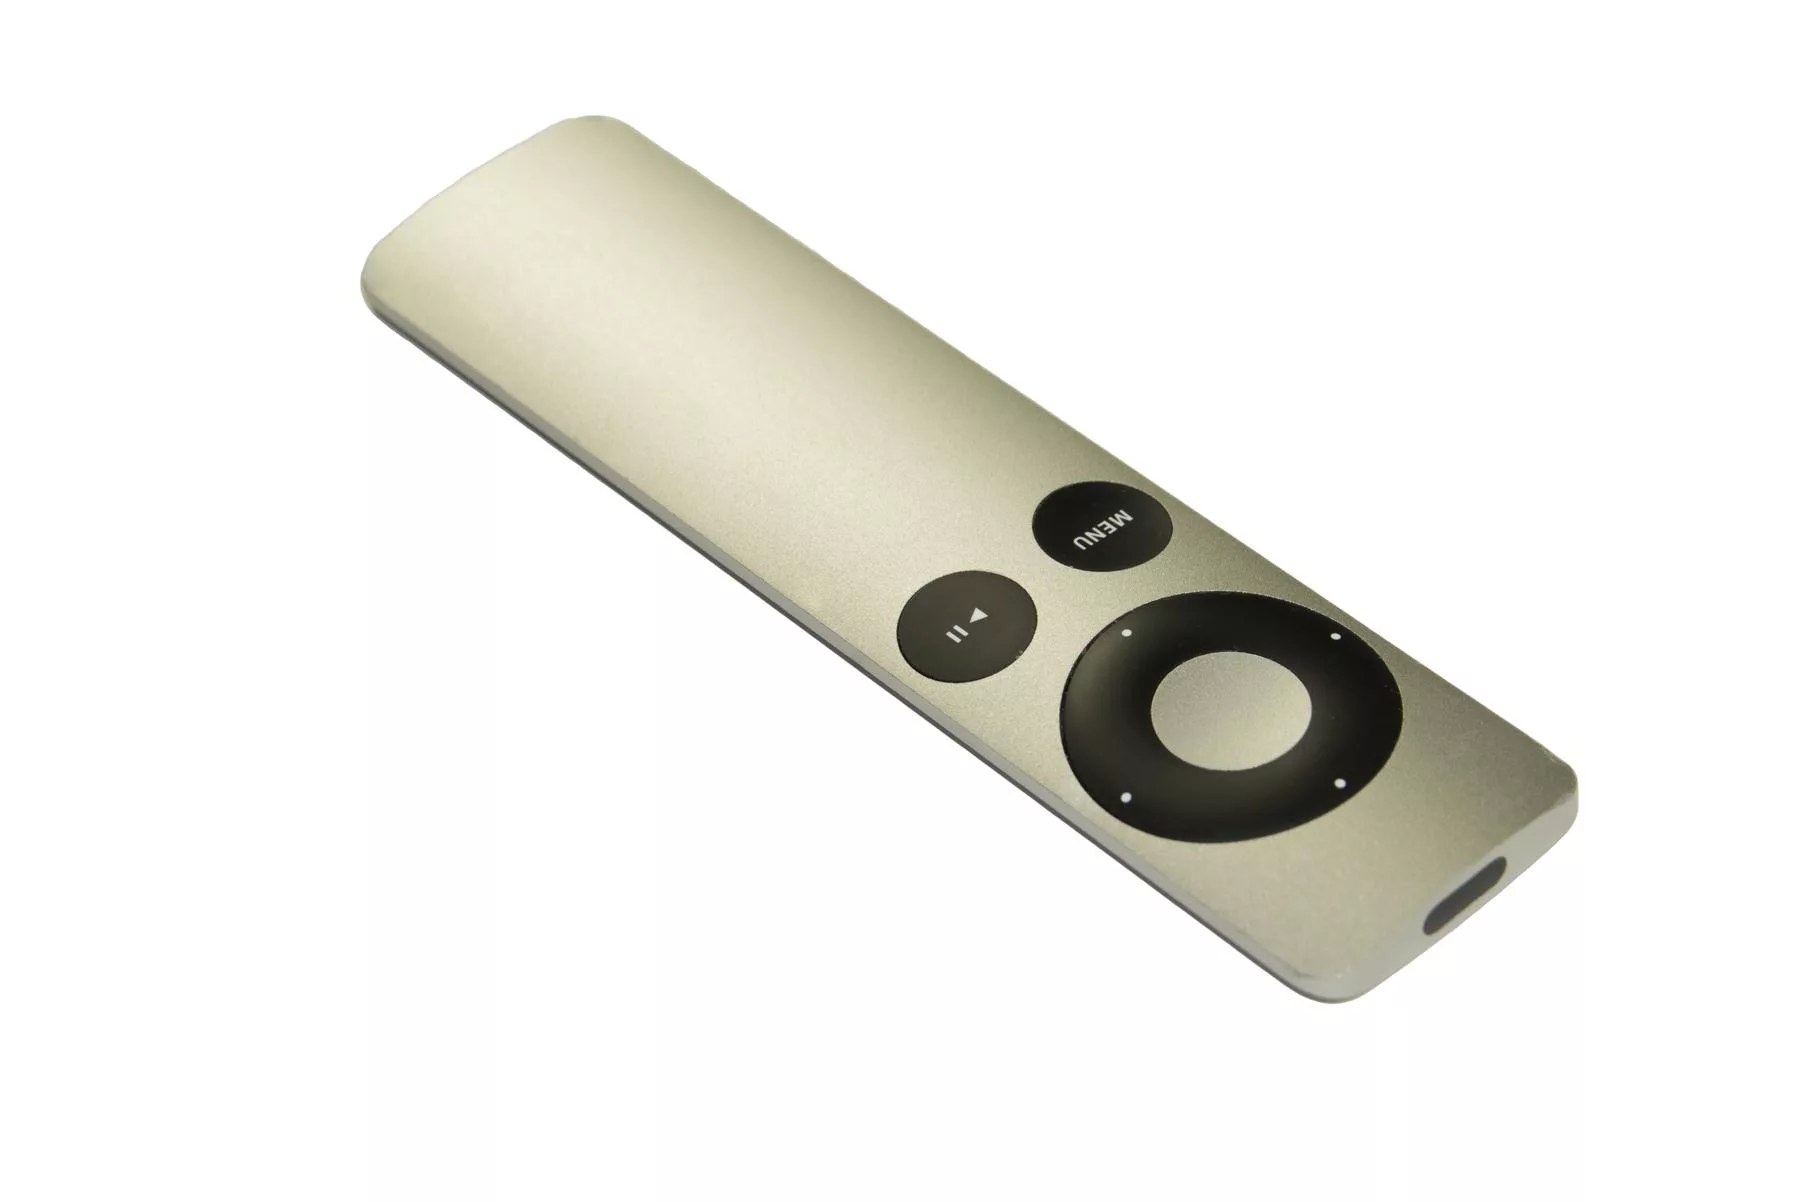 Apple TV Remote - a white and black remote control